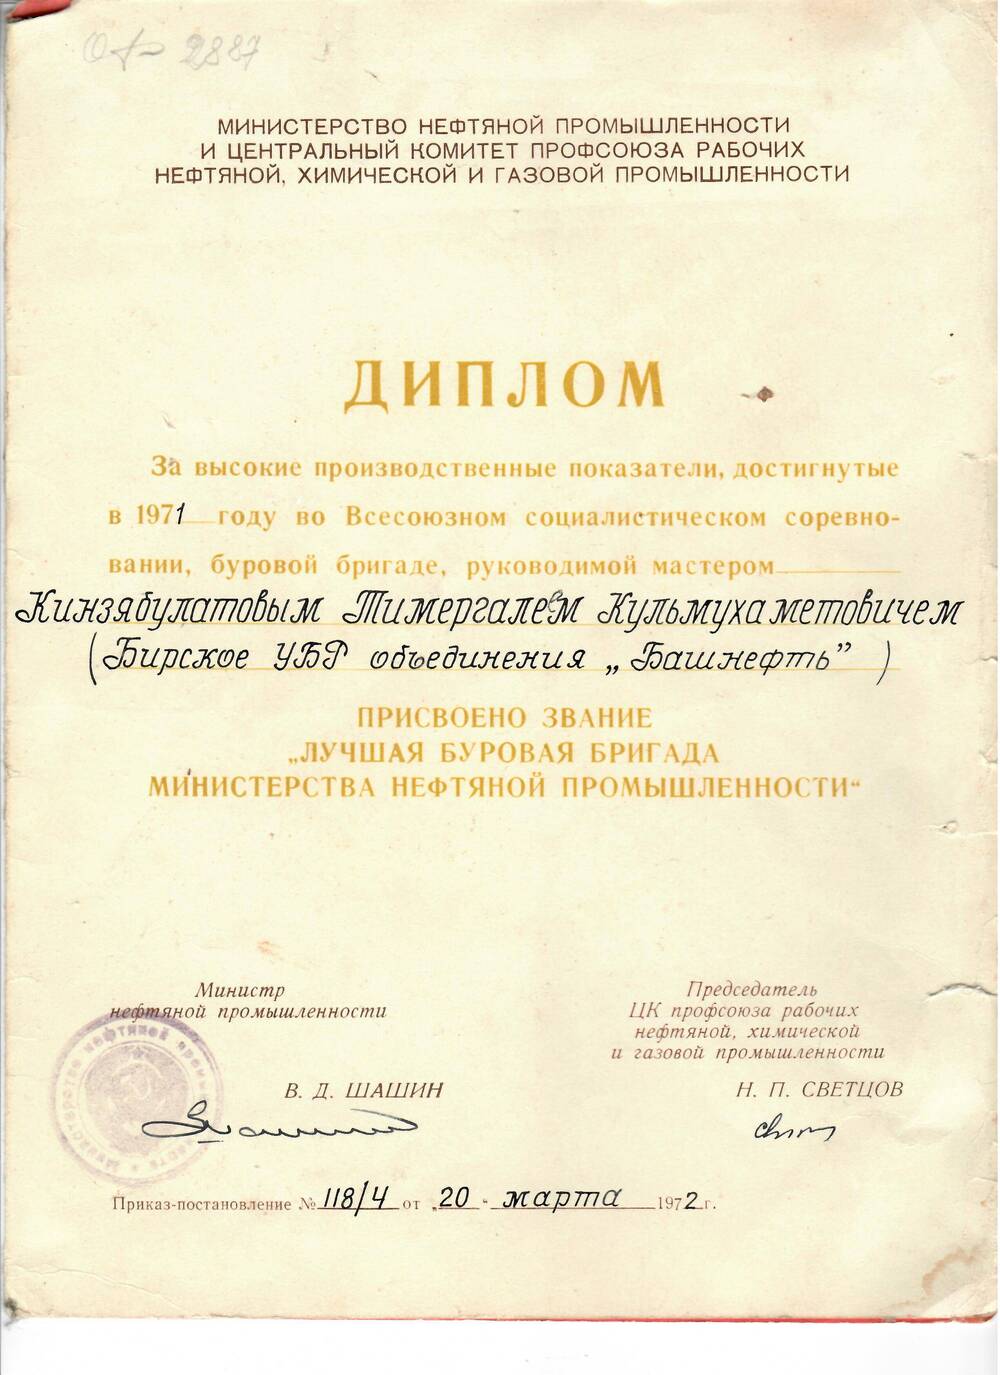 Диплом за высокие производственные показатели Бирскому УБР объединения Башнефть